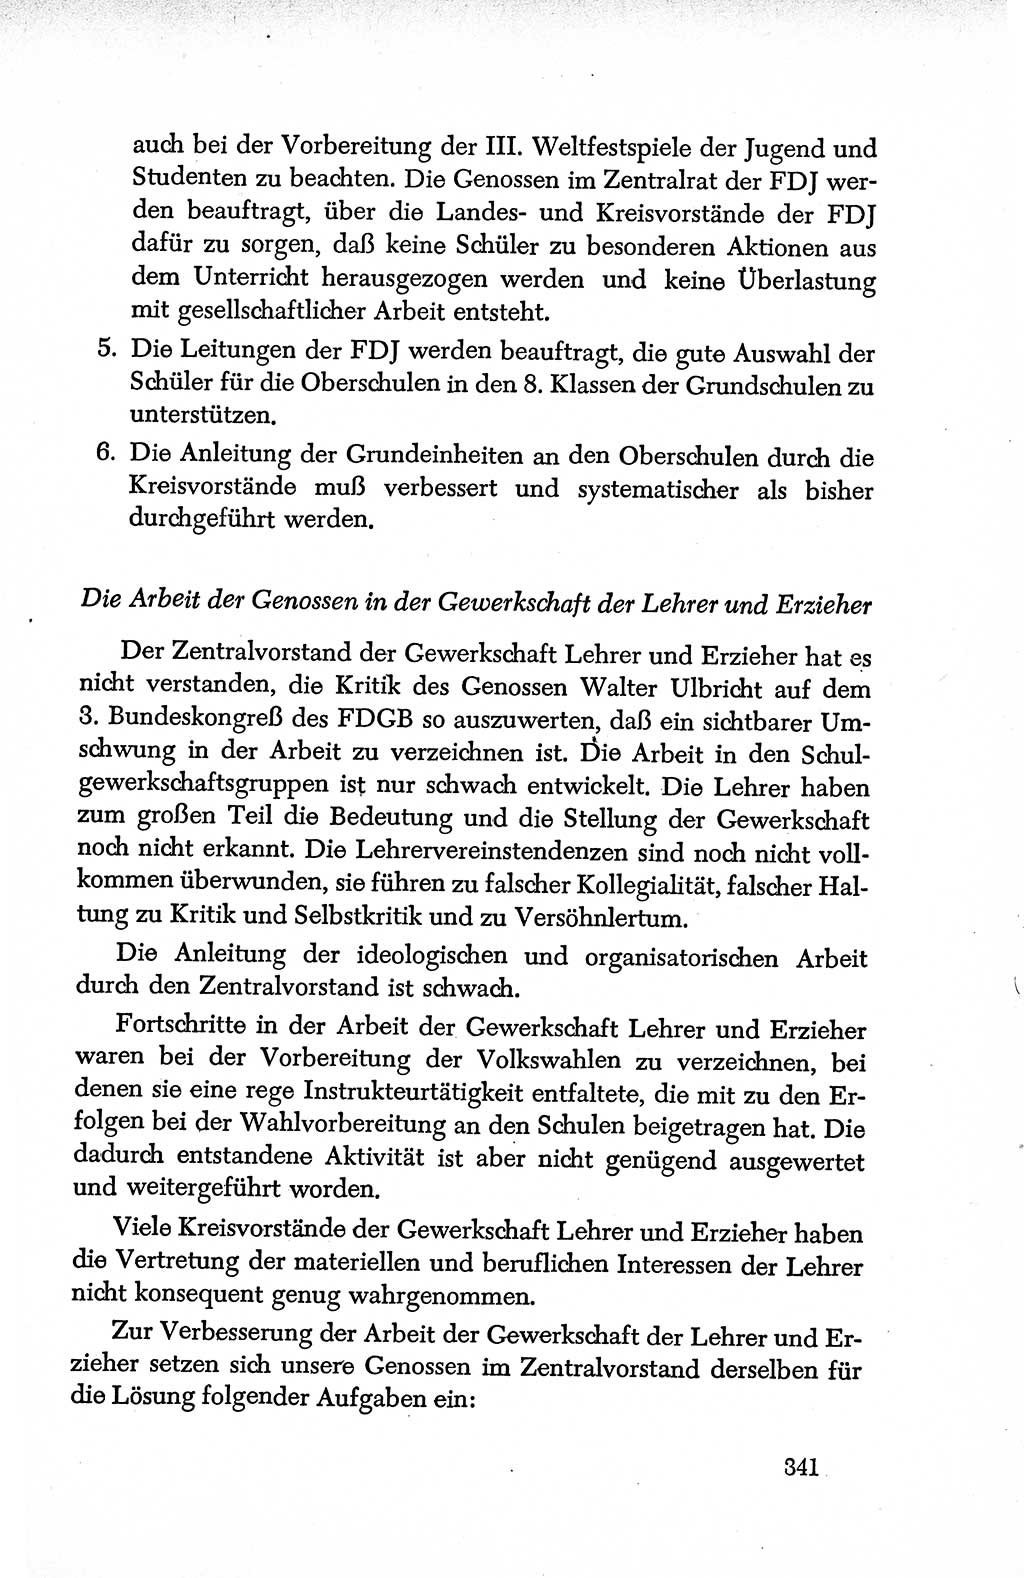 Dokumente der Sozialistischen Einheitspartei Deutschlands (SED) [Deutsche Demokratische Republik (DDR)] 1950-1952, Seite 341 (Dok. SED DDR 1950-1952, S. 341)